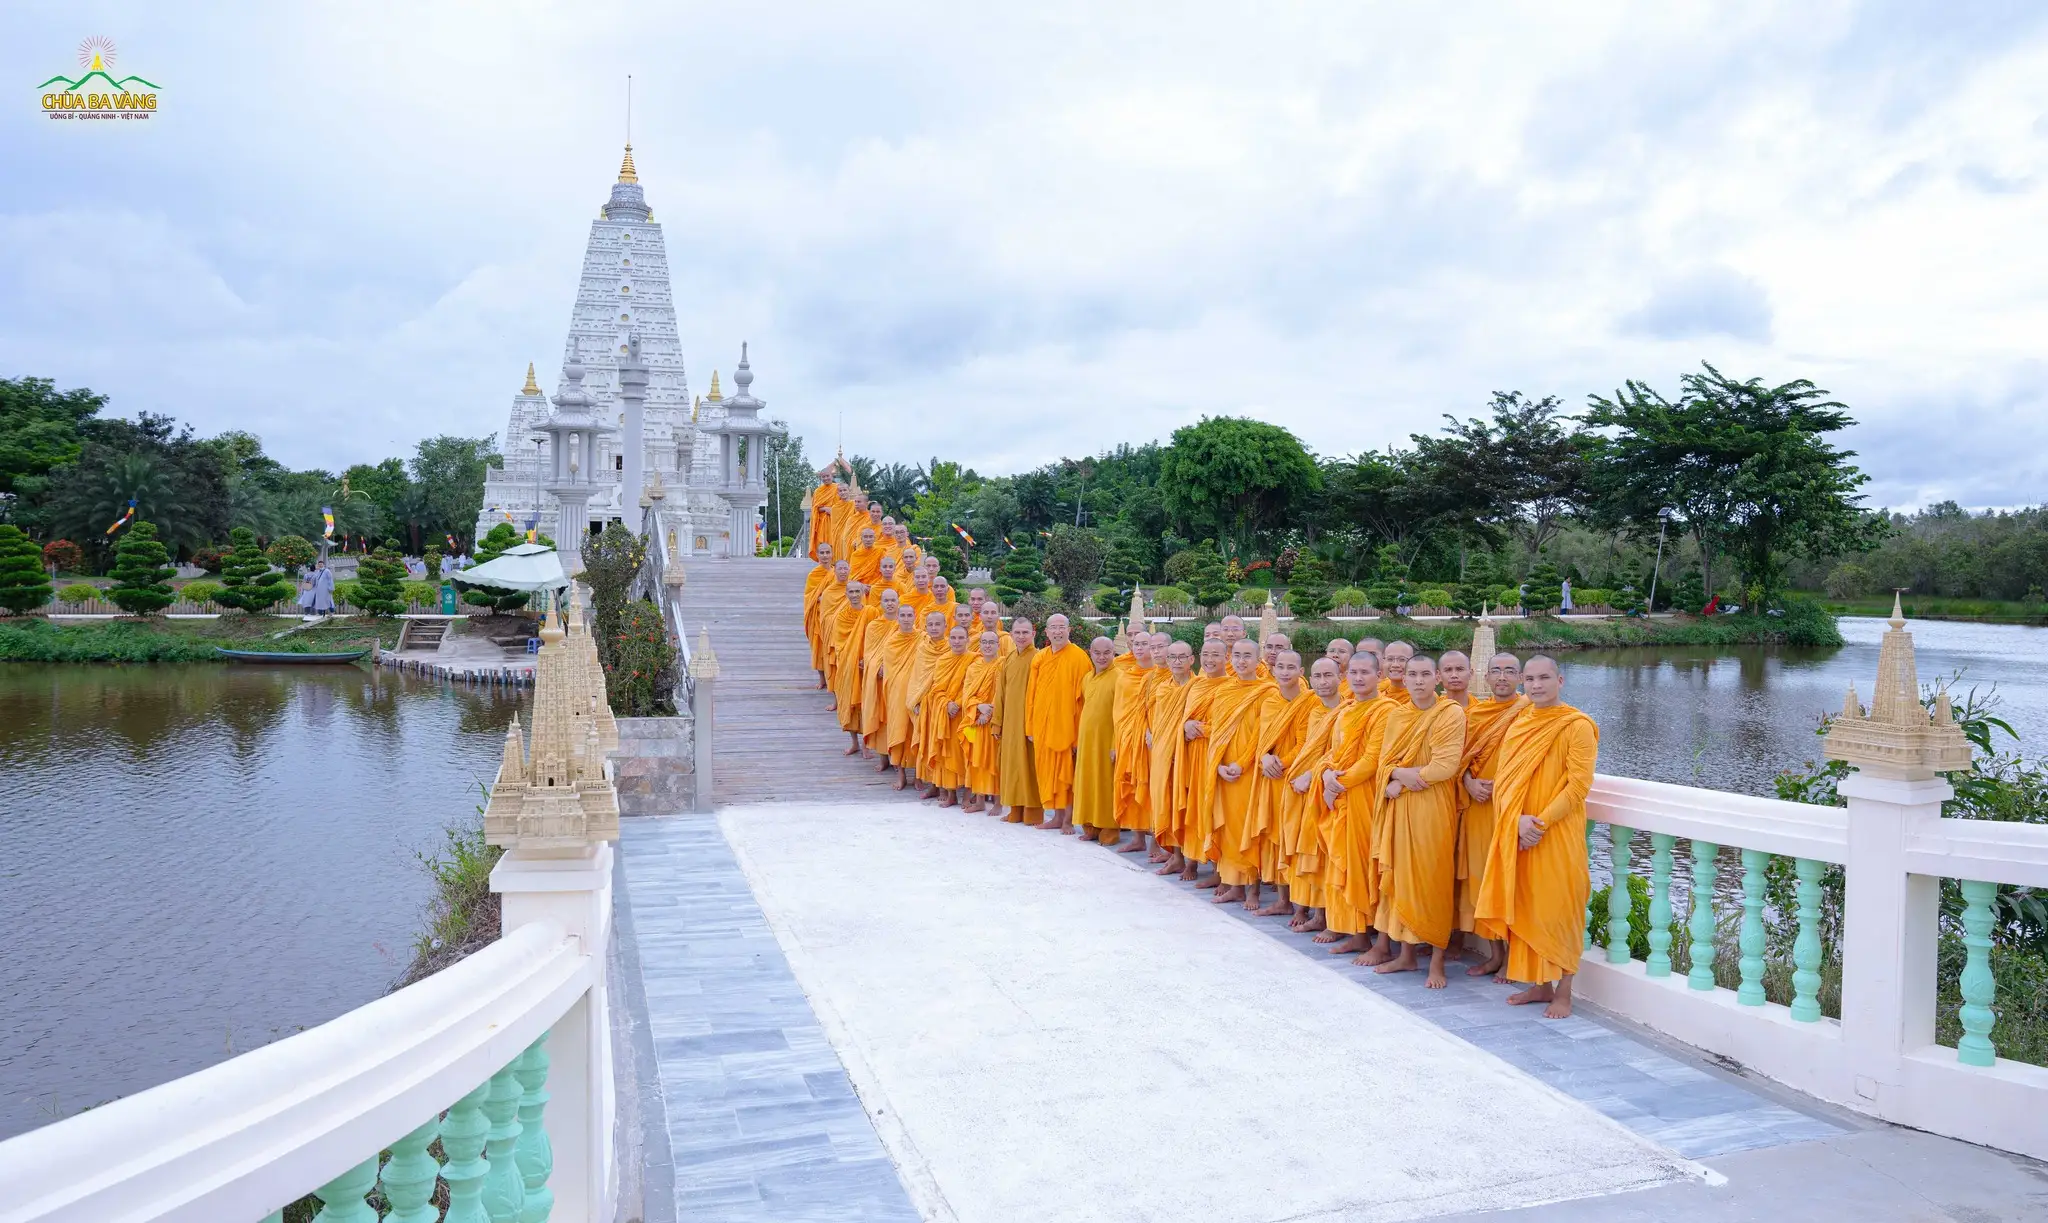 Đoàn chụp ảnh lưu niệm trong khuôn viên Thiền viện Trúc Lâm Chánh Giác